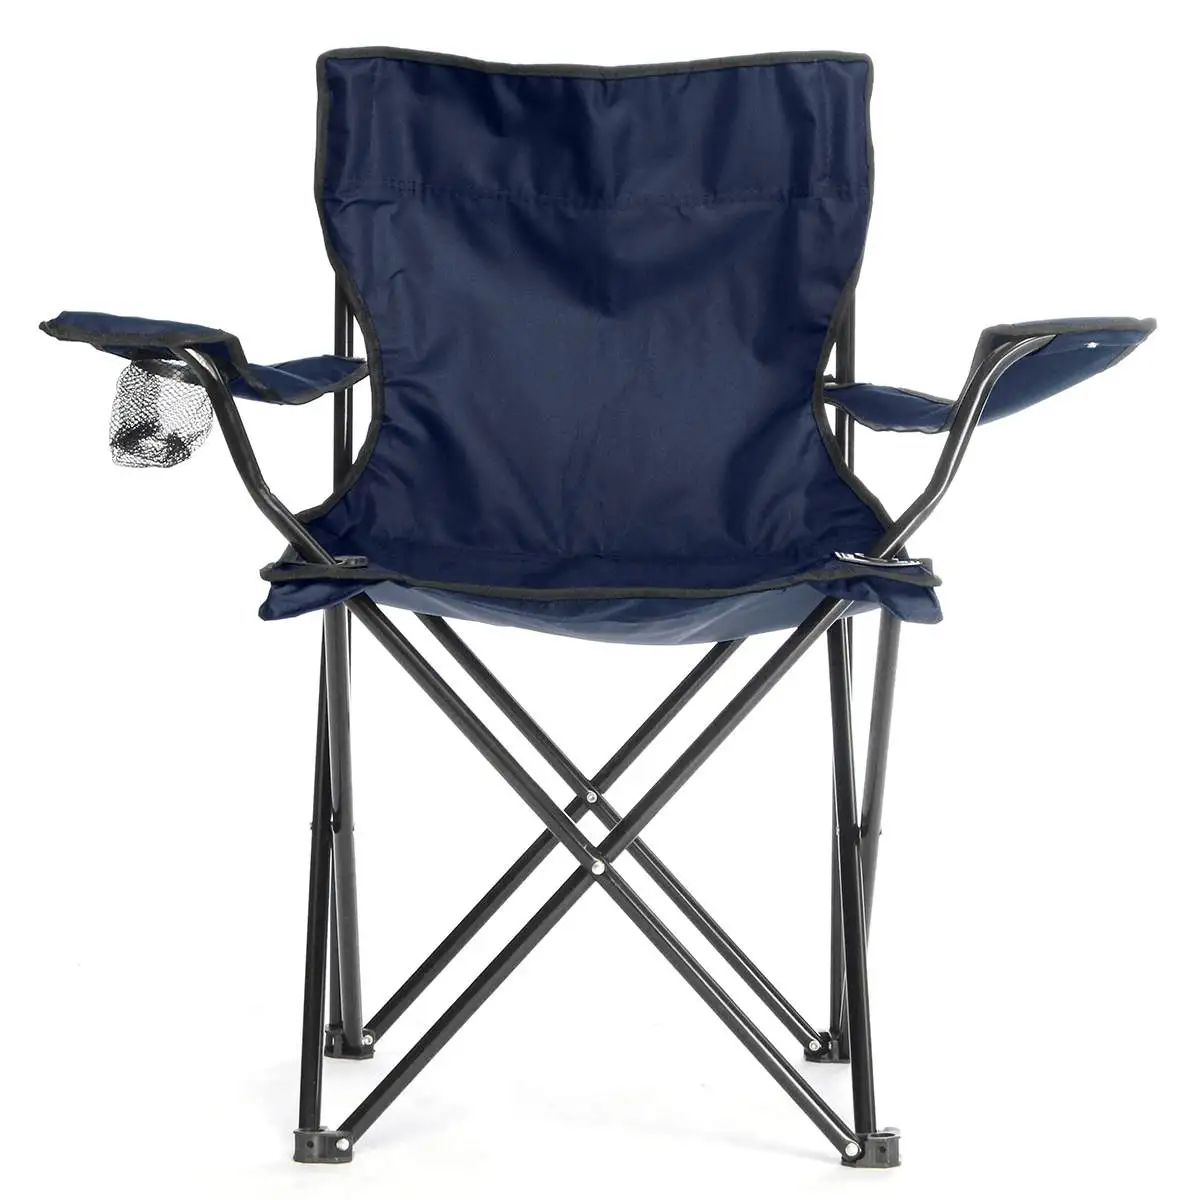 50x50x80 см светильник складной кемпинг рыбалка стул Портативный пляжные Сад Открытый Отдых Досуг кресло для пикника, пляжа, набор инструментов - Цвет: Navy